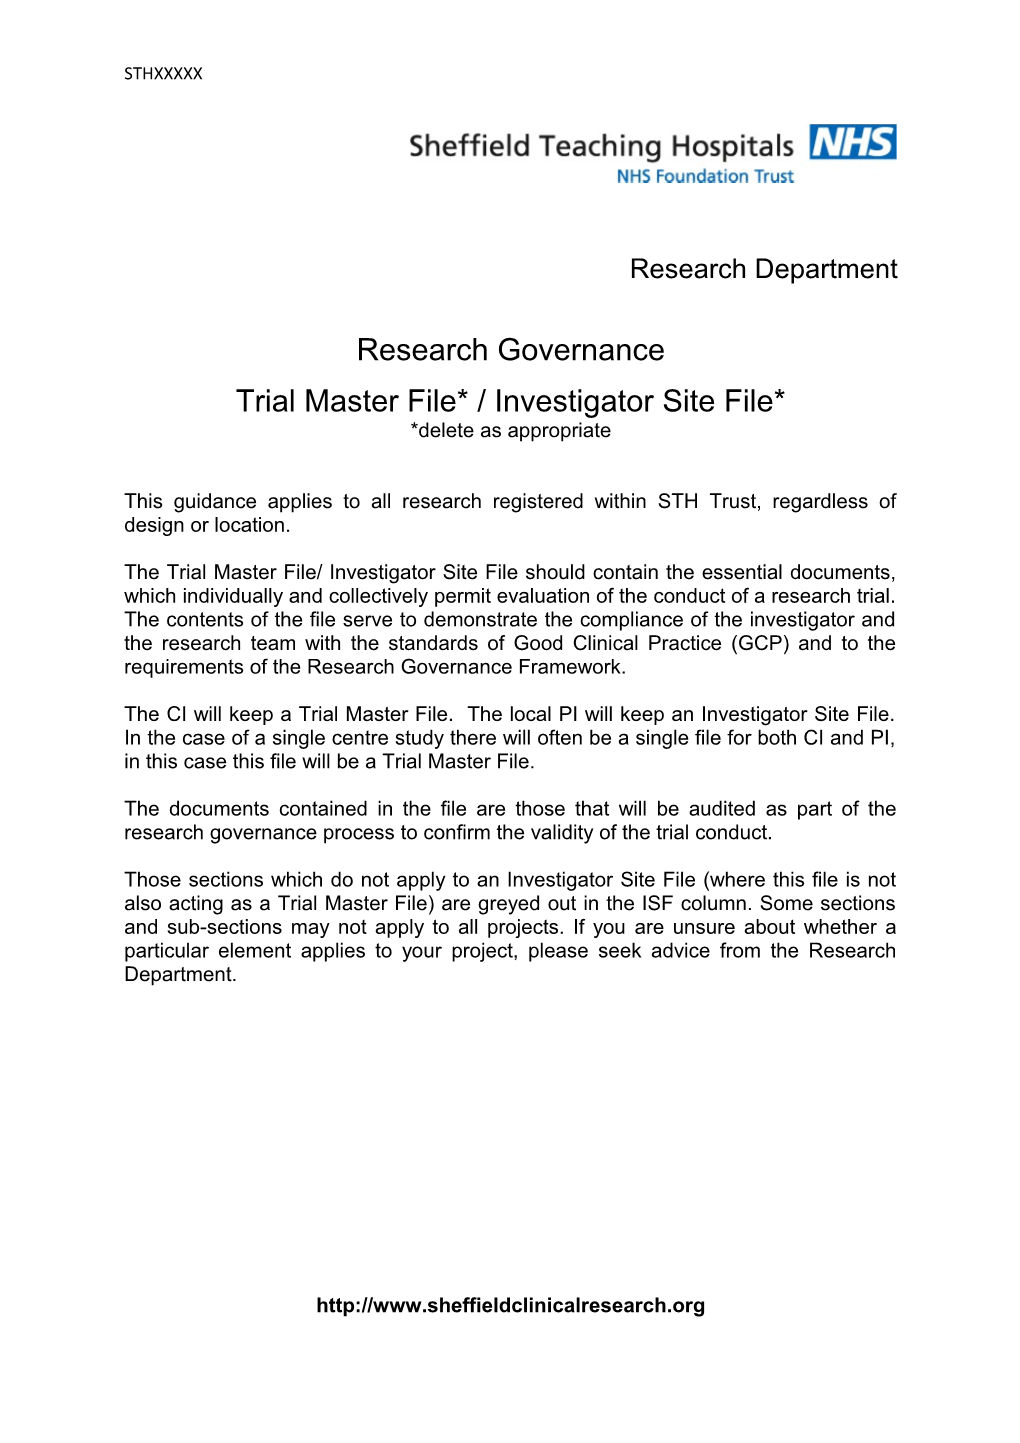 Trial Master File* / Investigator Site File*